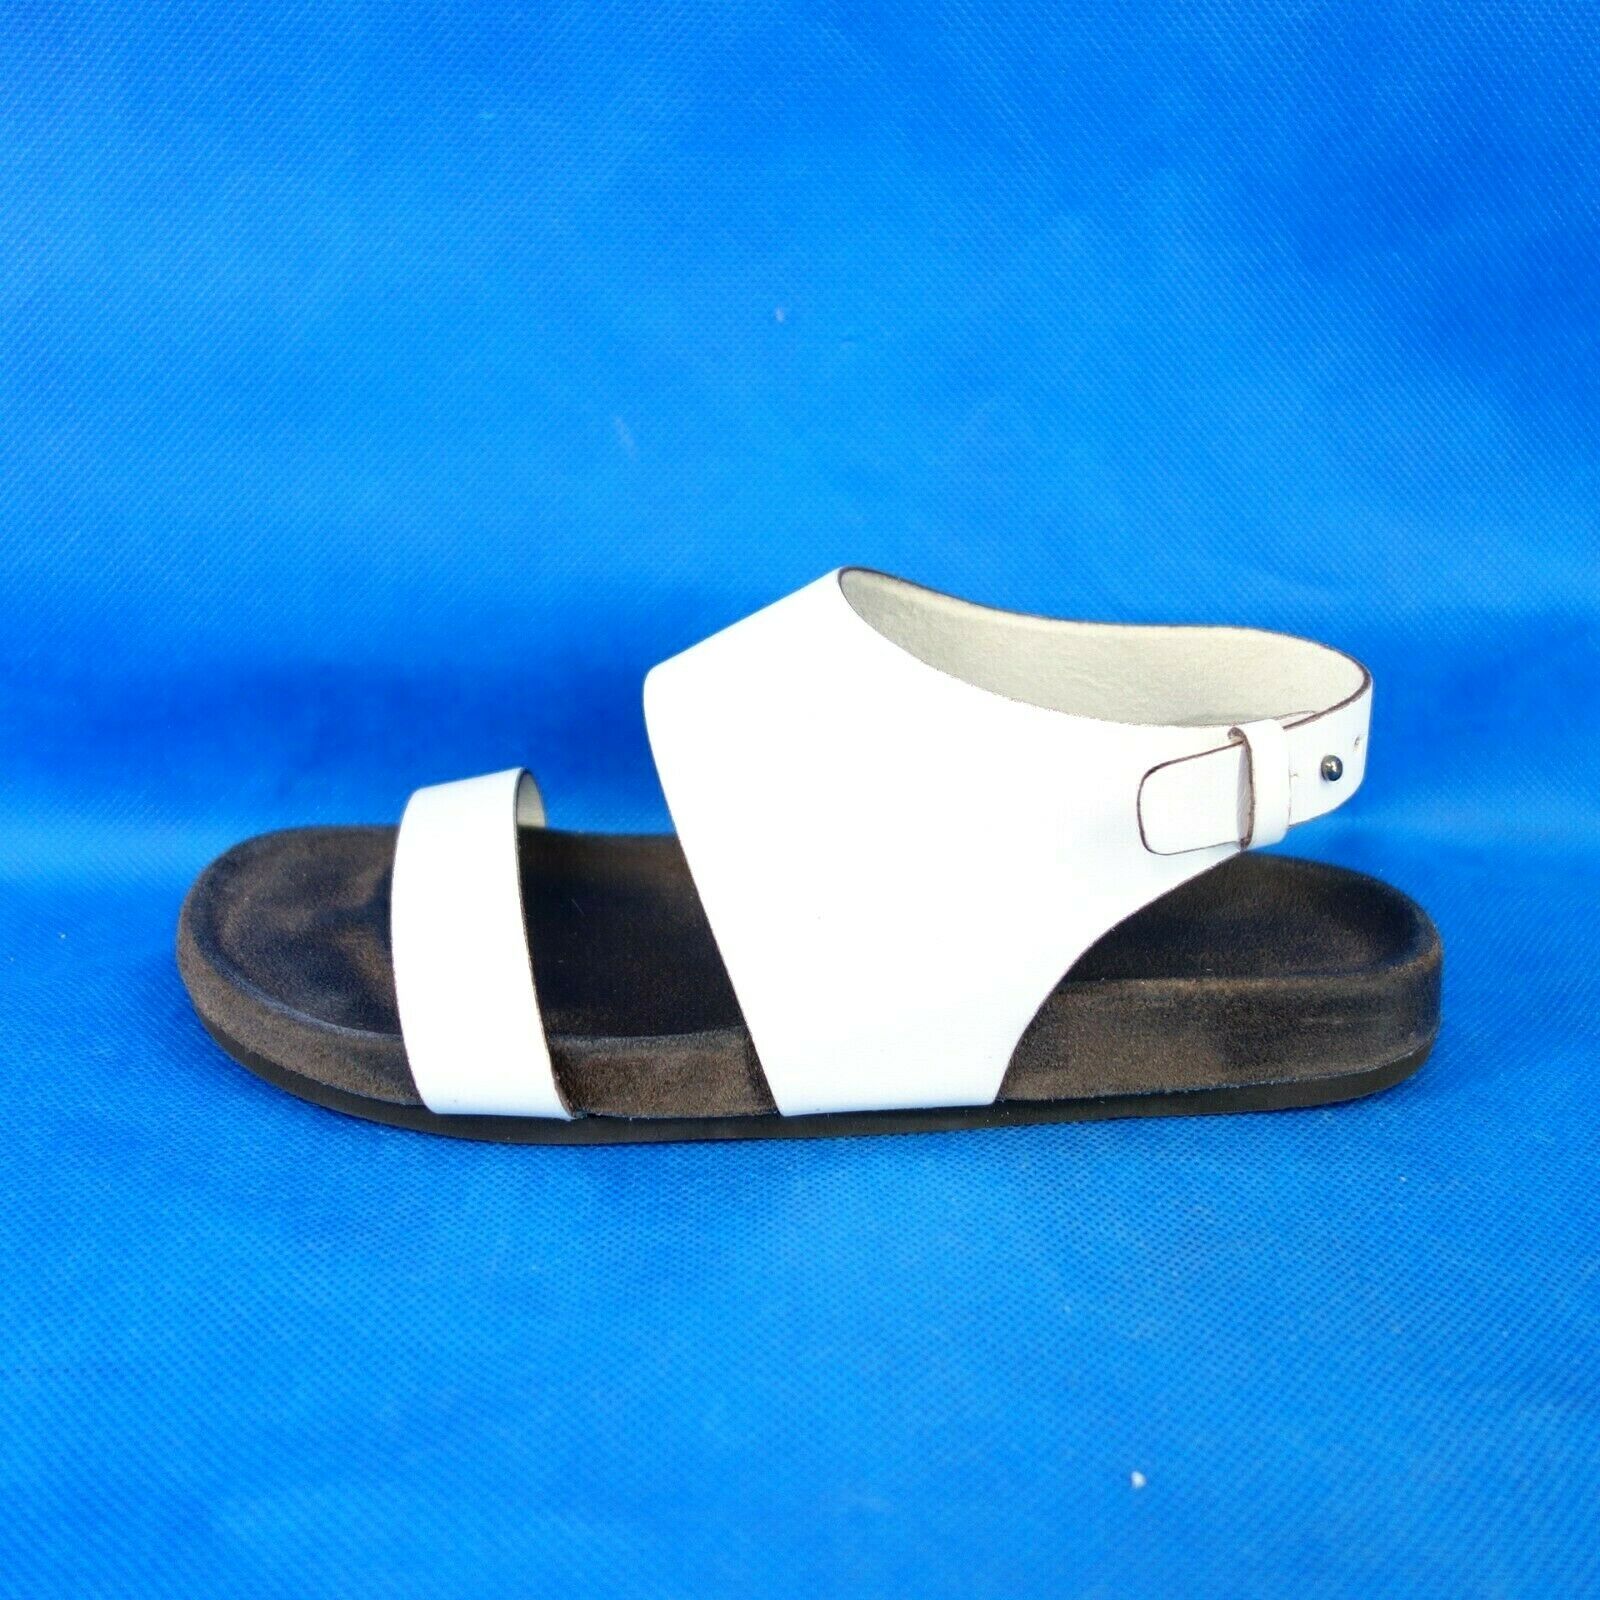 Giulia Taddeucci Designer Damen Schuhe Sandalen 37 Leder Weiß Fußbett Np 129 Neu